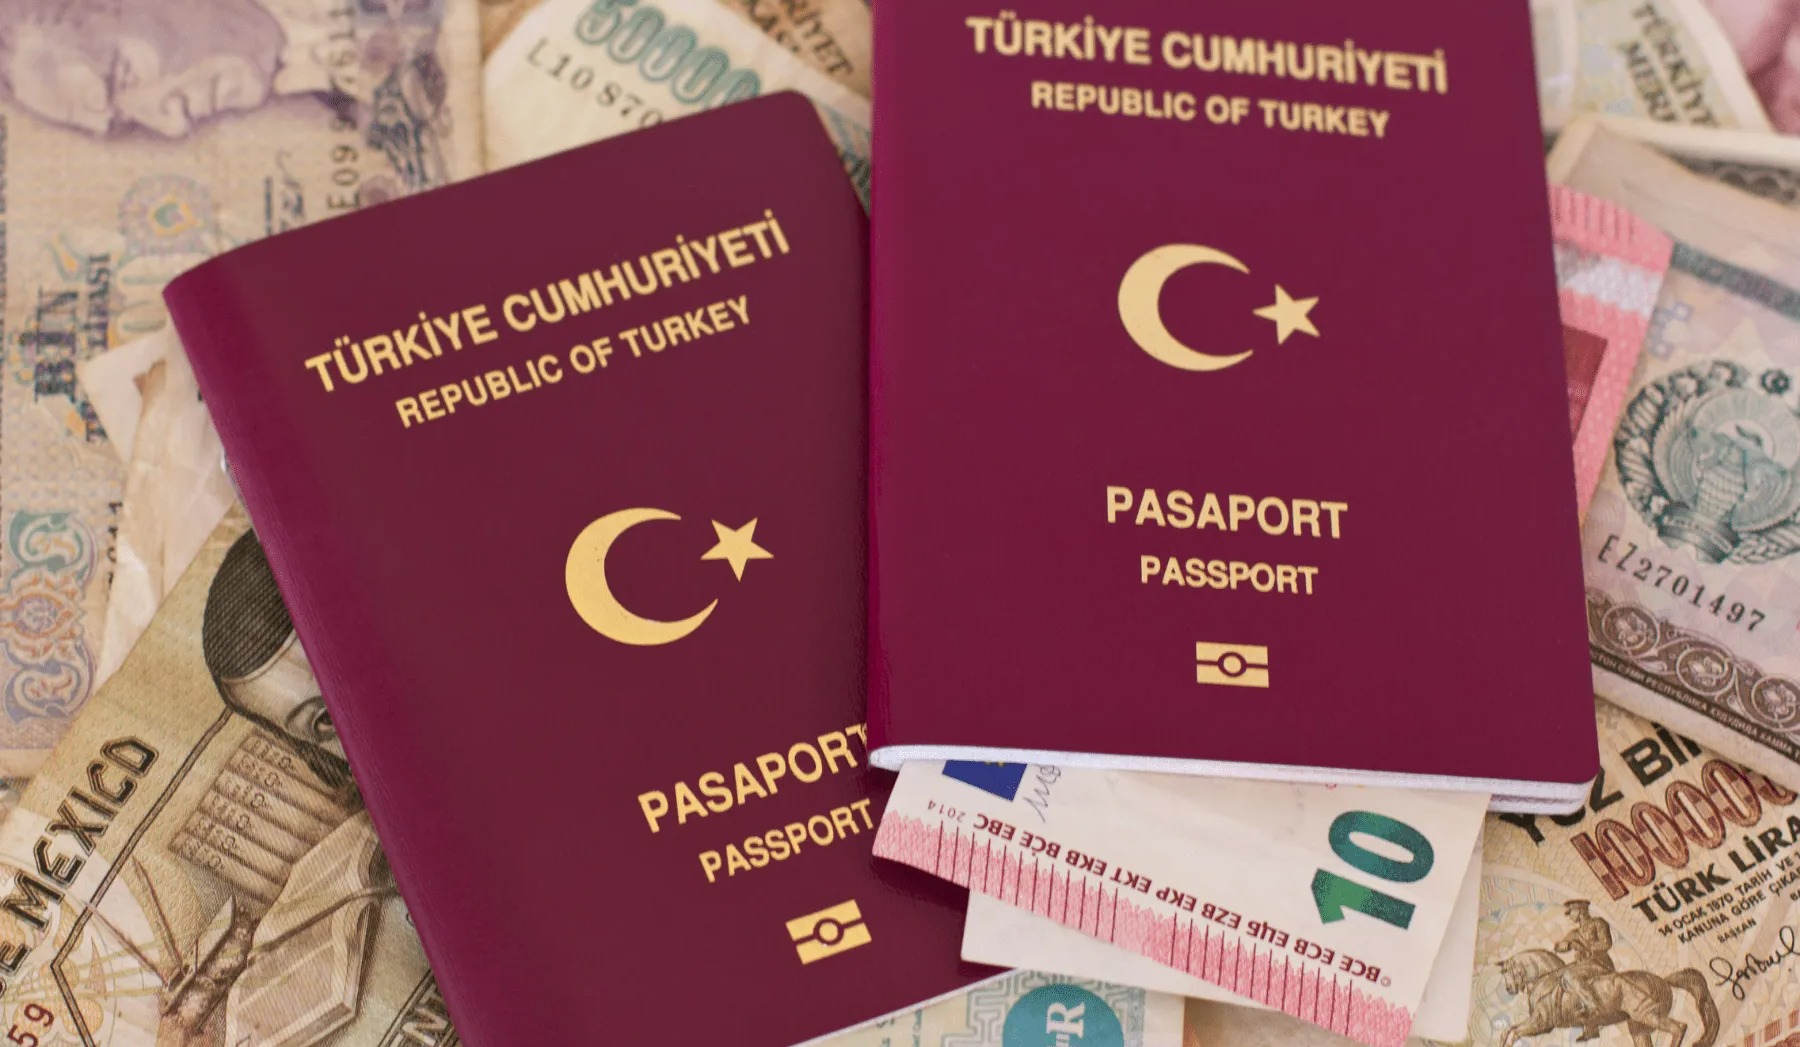 پاسپورت - برگه تردد یکساله در ترکیه